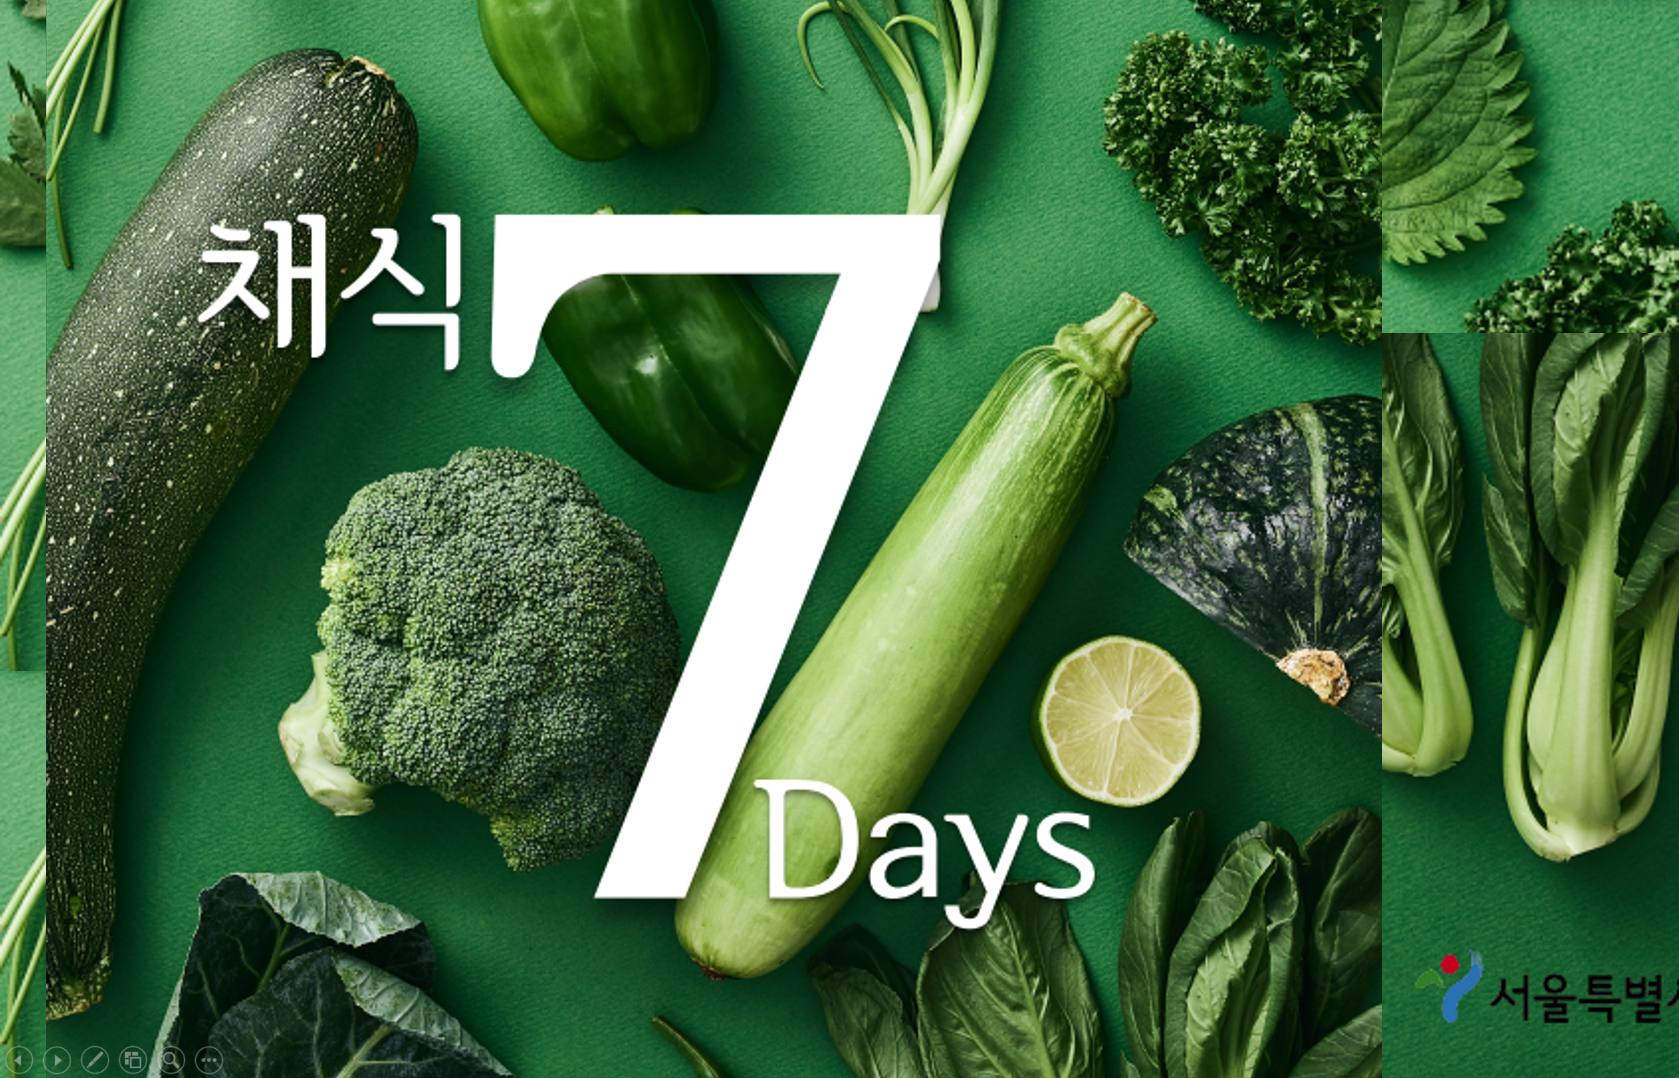 [서울시자료] 유연한 채식 실천을 위한 레시피_ 채식 7days